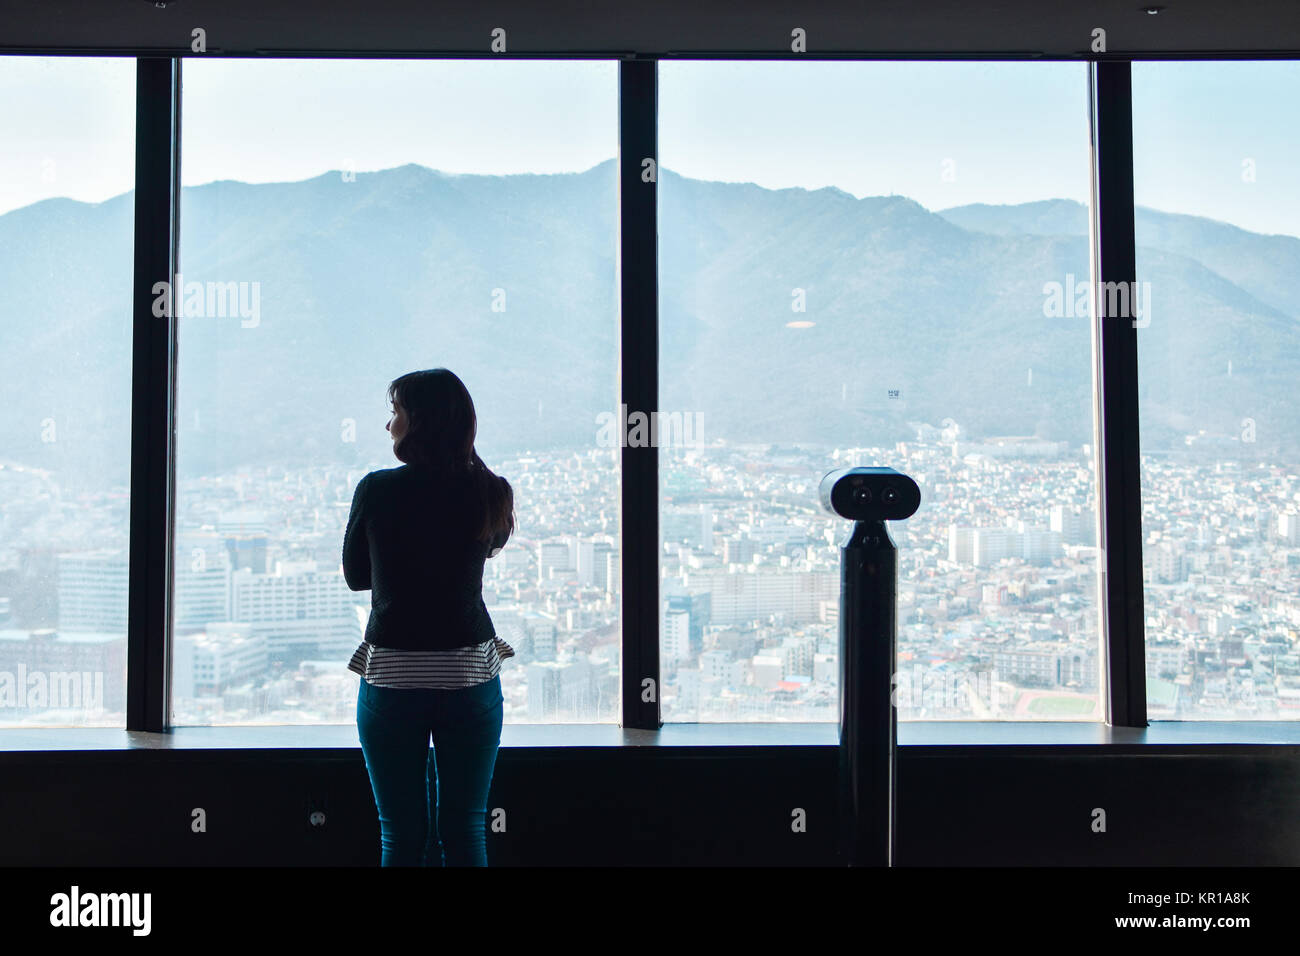 Vue arrière d'une jeune fille à la recherche de la ville depuis une tour d'observation, Daegu, Corée du Sud Banque D'Images